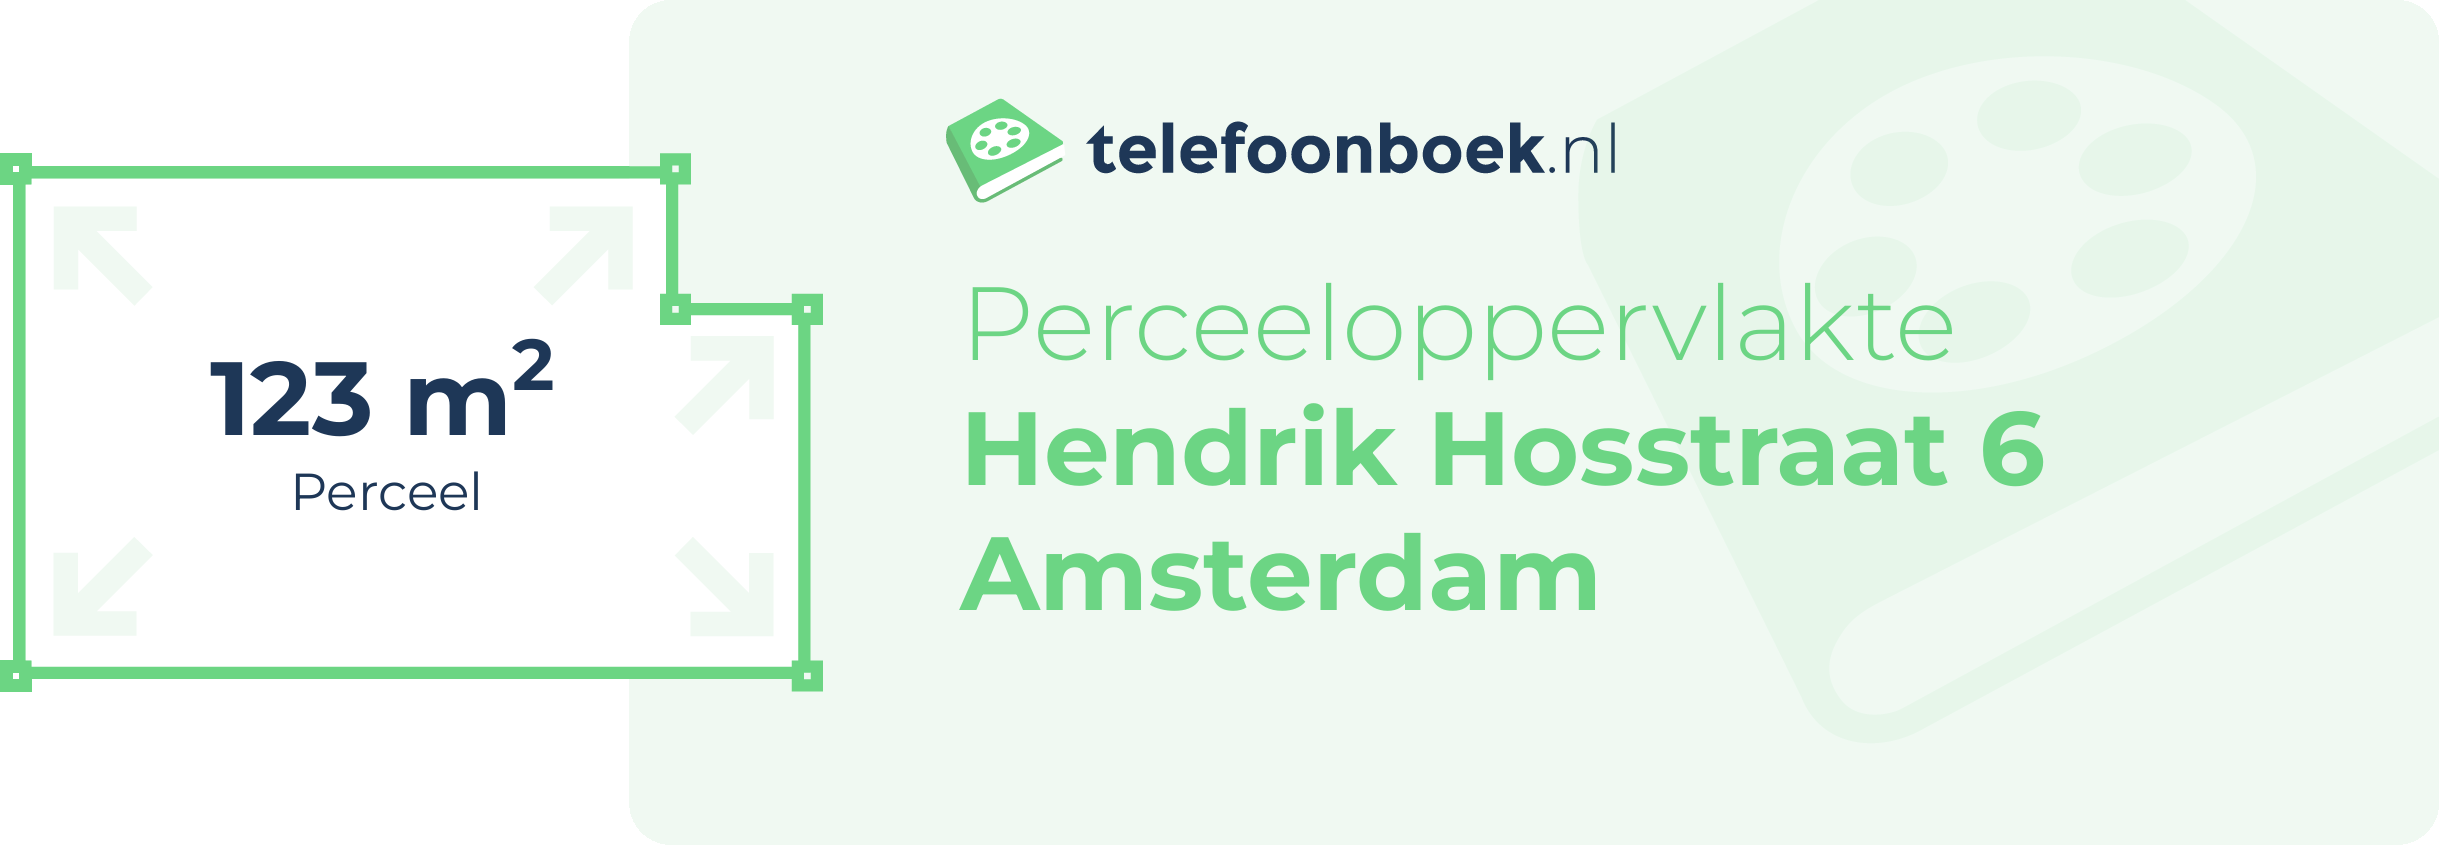 Perceeloppervlakte Hendrik Hosstraat 6 Amsterdam